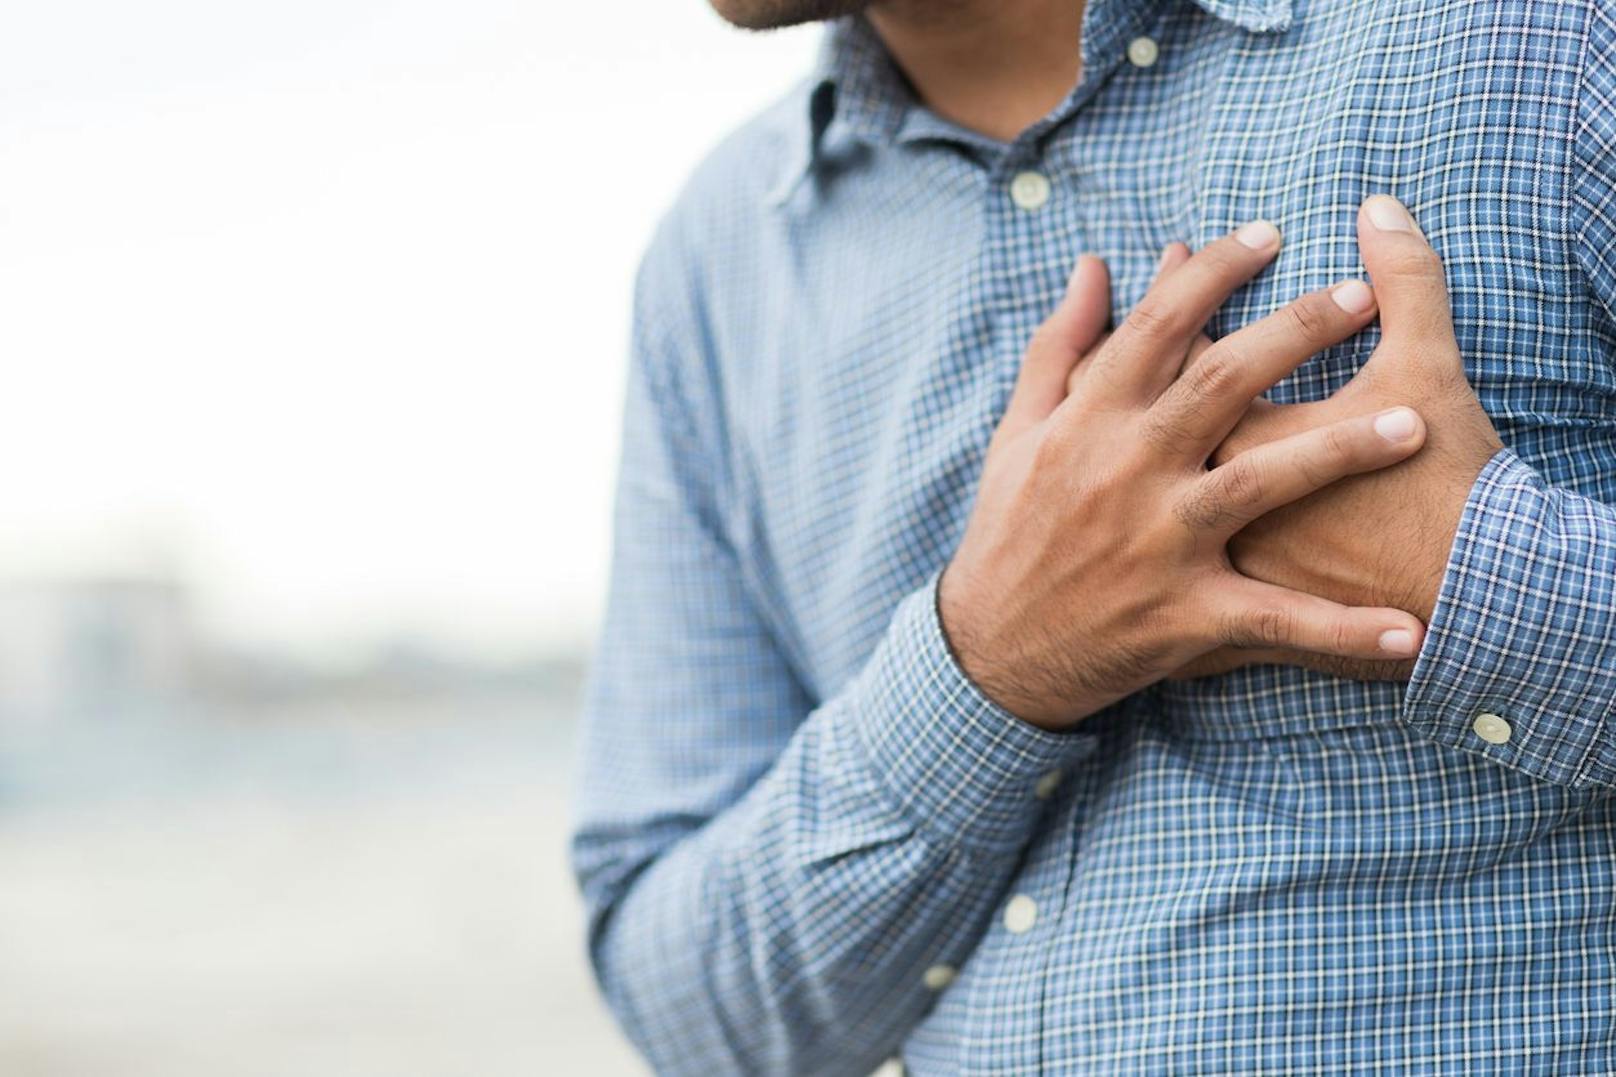 Zu den Symptomen eines Herzinfarkts zählen Brustschmerzen, Kurzatmigkeit, Übelkeit, Magenschmerzen, Herzklopfen, Angstzustände, Schwitzen und Schwindelgefühl, obwohl Frauen seltener unter Brustschmerzen leiden.